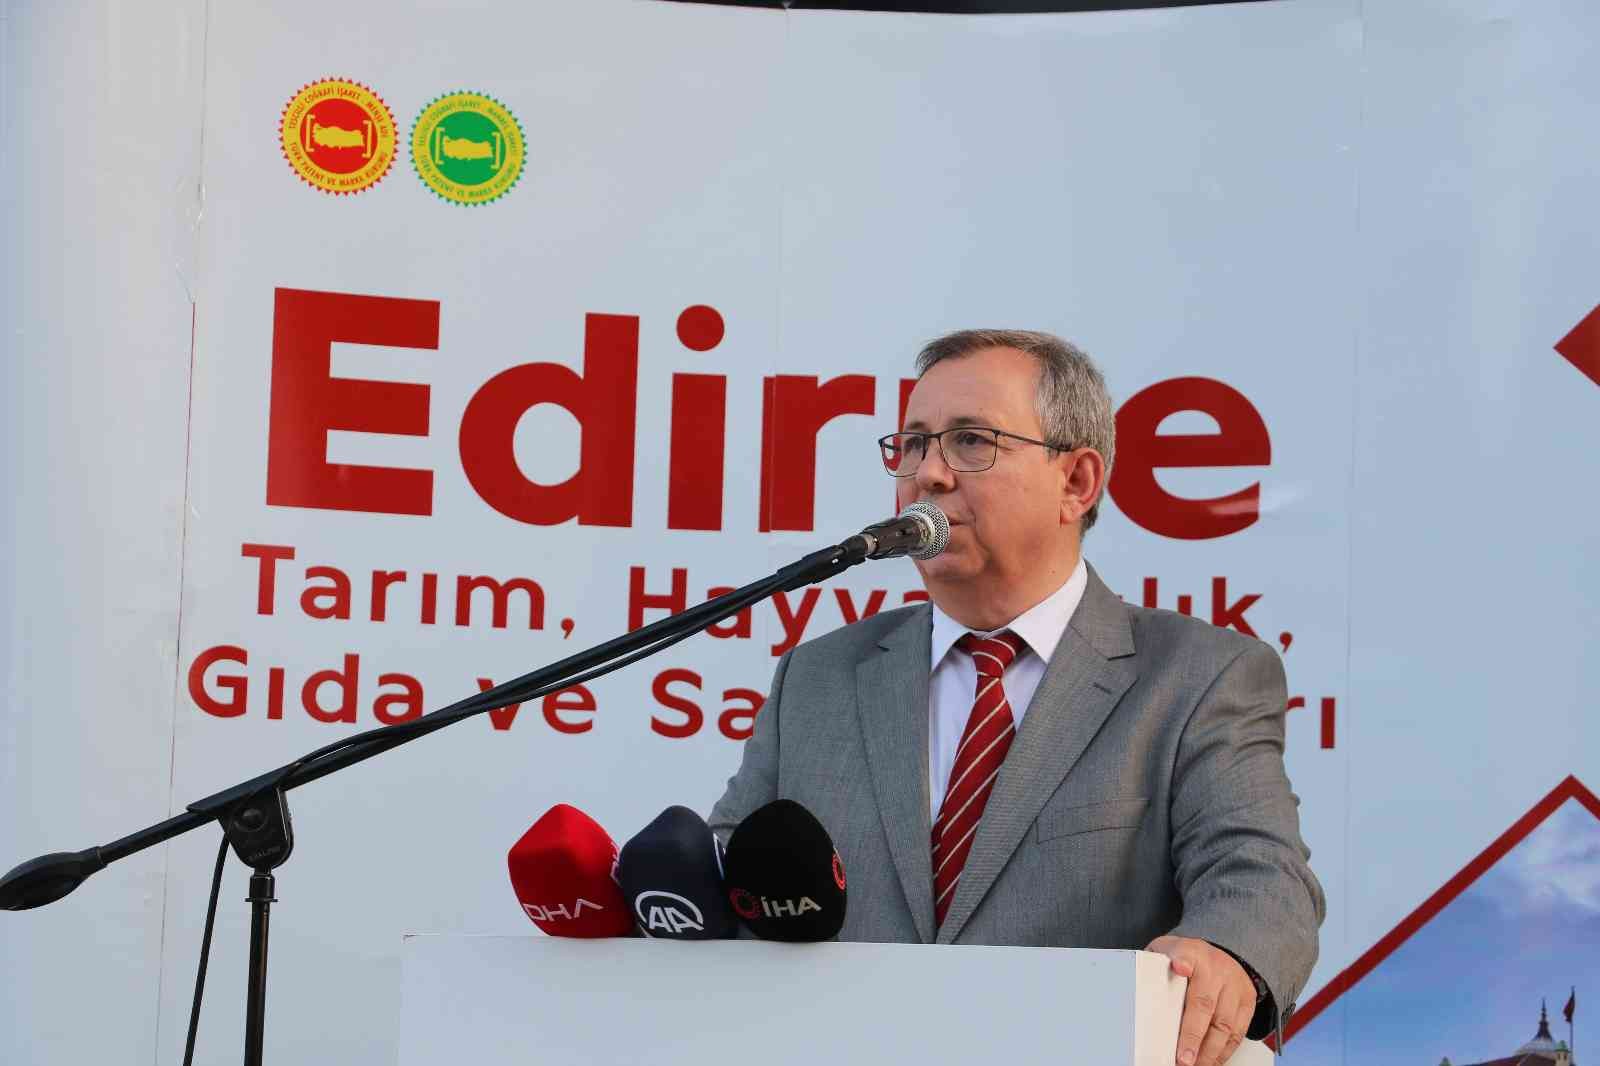 Türkiye Odalar ve Borsalar Birliği’nin katkılarıyla Trakya Üniversitesi ile Edirne Ticaret ve Sanayi Odası iş birliğinde düzenlenen "Edirne Tarım ...